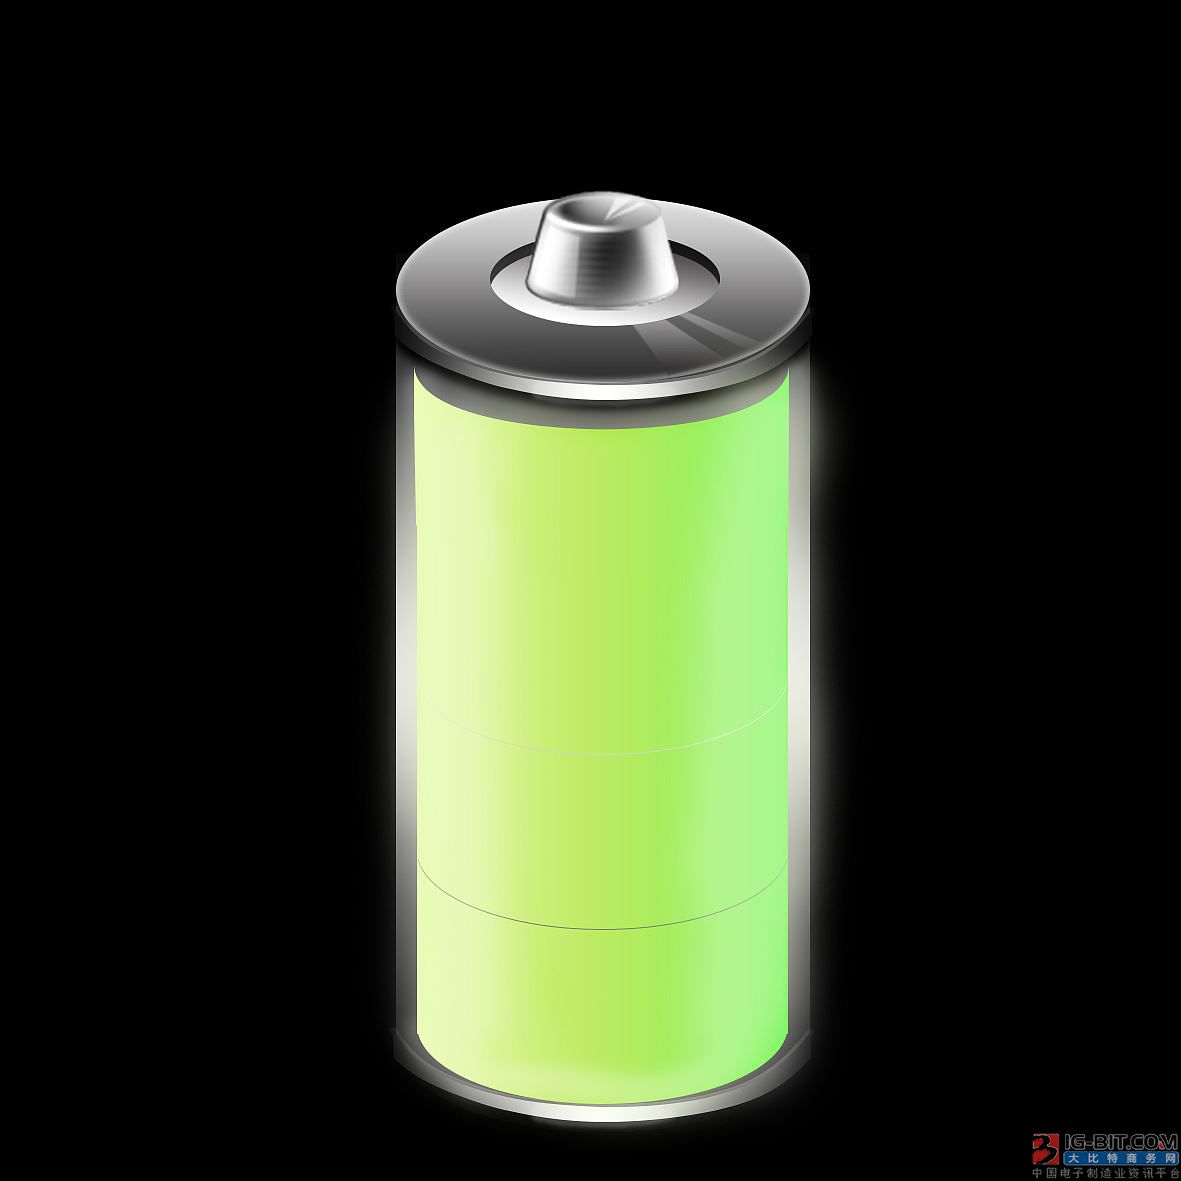 专家称珠海银隆钛酸锂电池不适合当下电动车市场